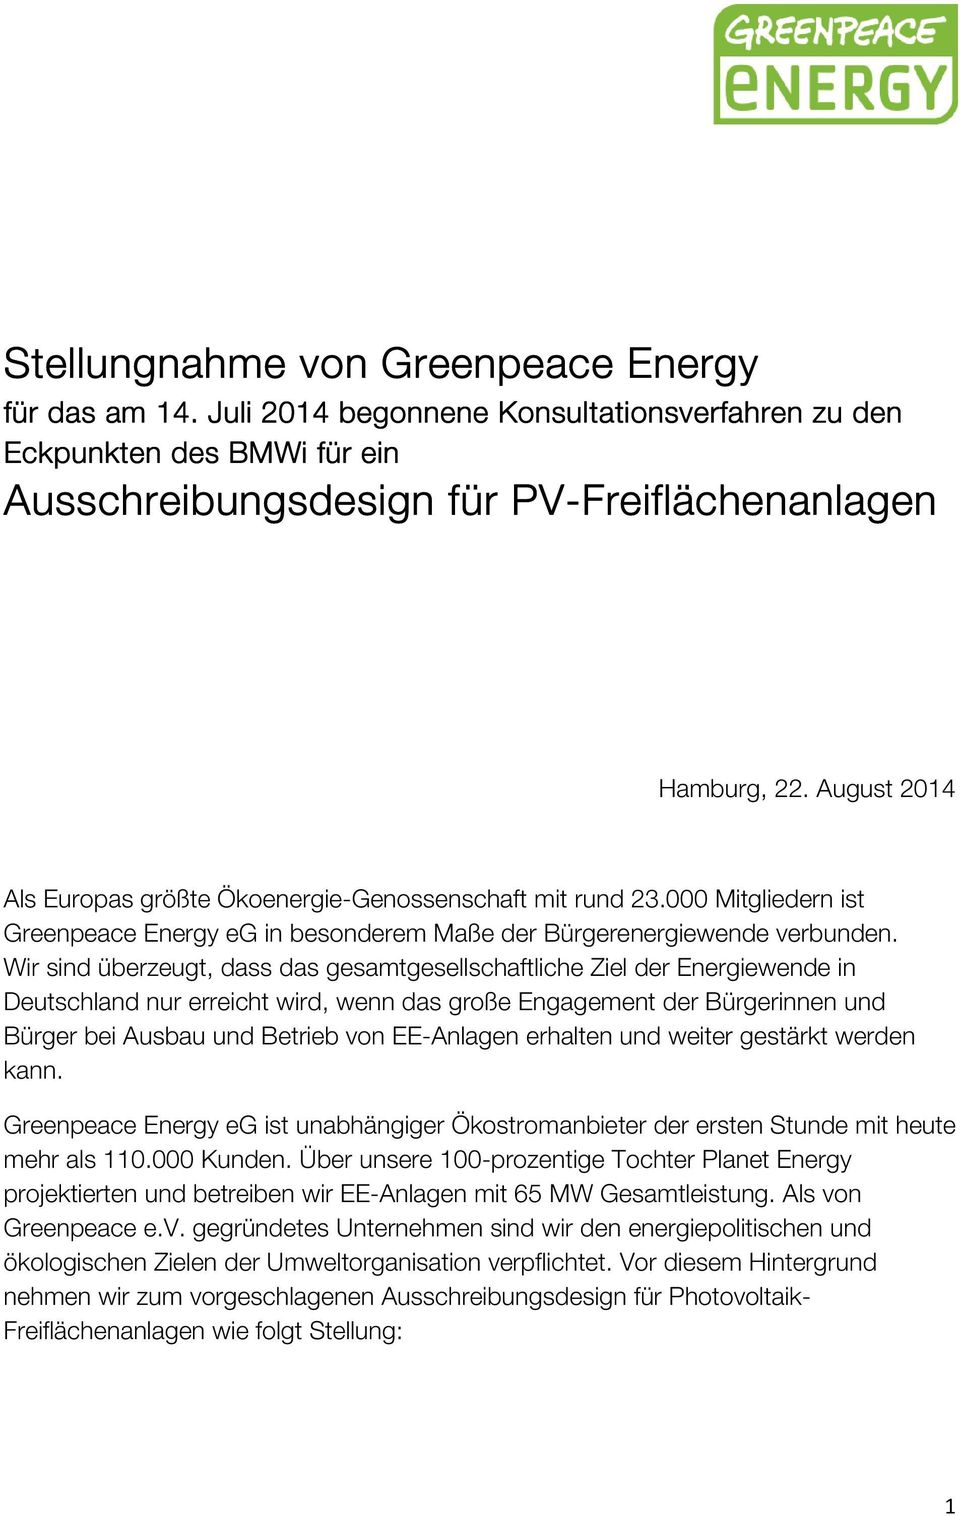 Wir sind überzeugt, dass das gesamtgesellschaftliche Ziel der Energiewende in Deutschland nur erreicht wird, wenn das große Engagement der Bürgerinnen und Bürger bei Ausbau und Betrieb von EE-Anlagen